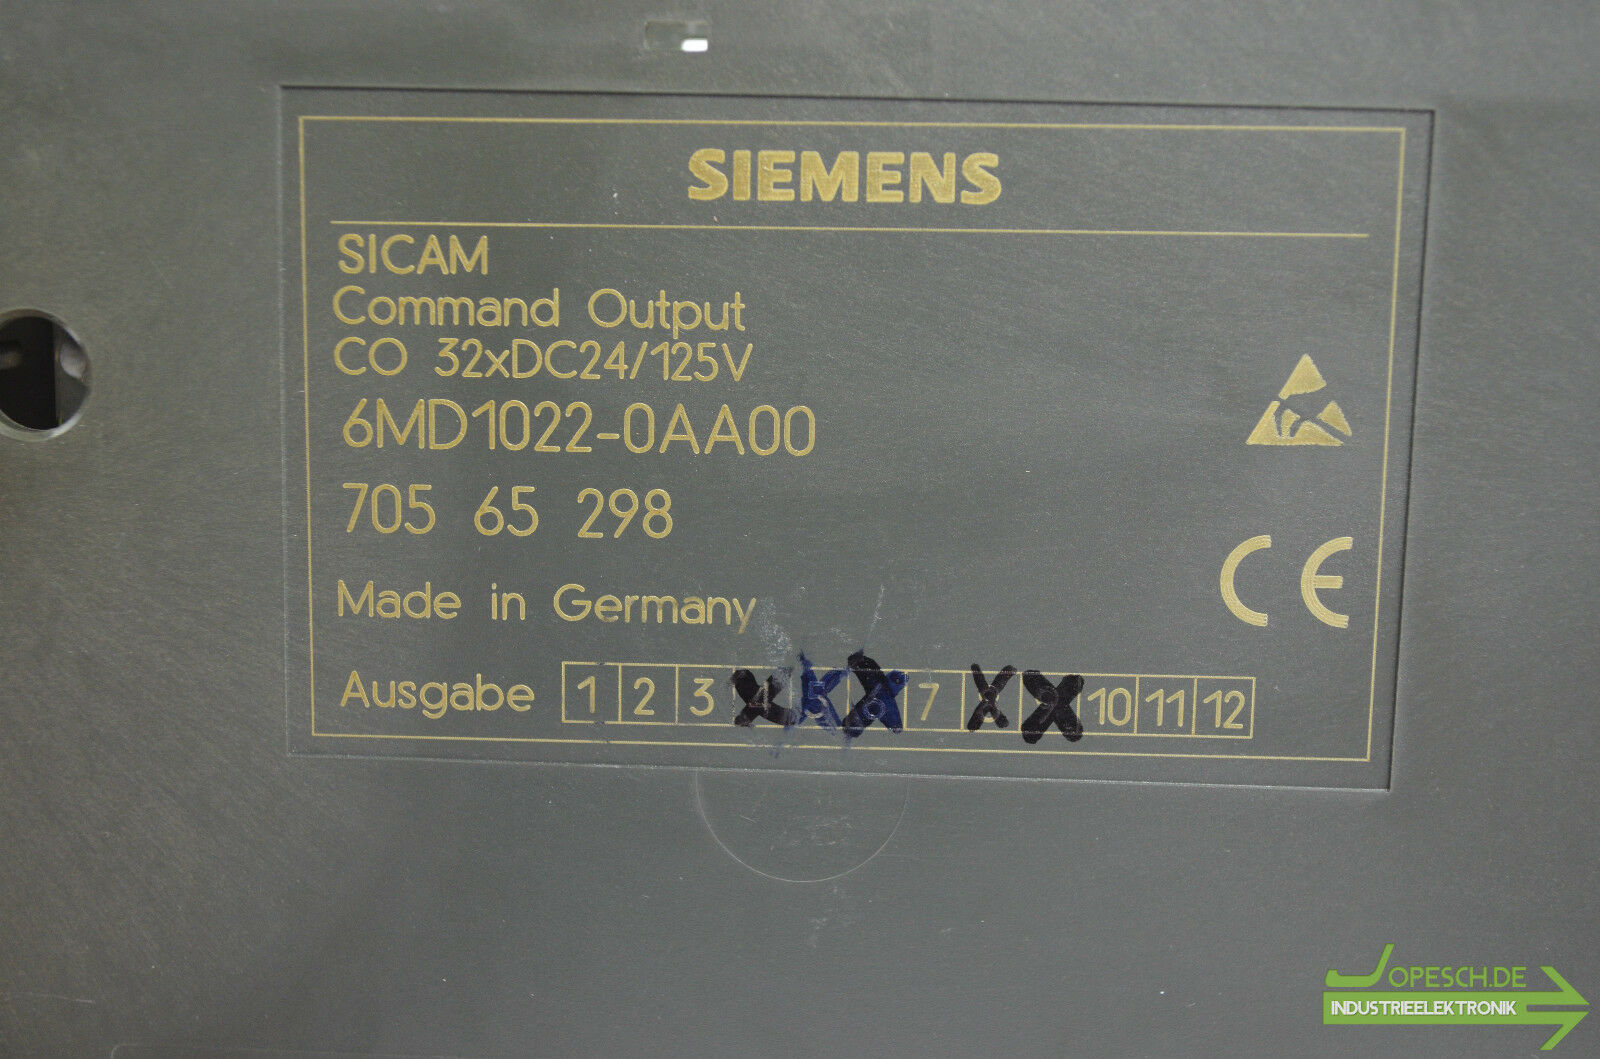 Siemens sicam 6MD1022-0AA00